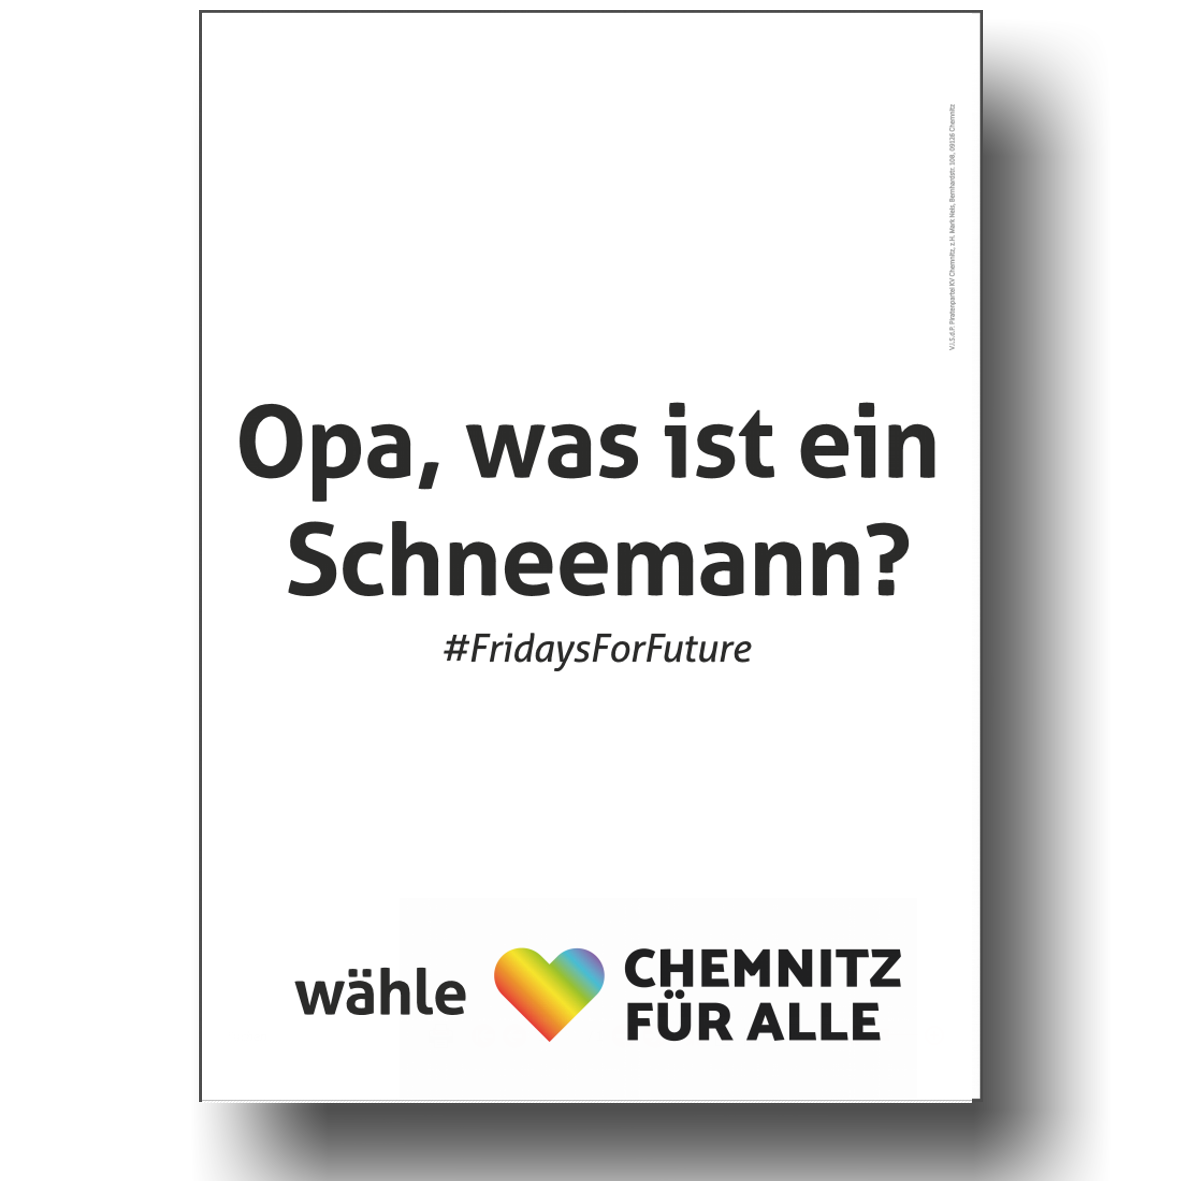 Wahlplakat fridays for future 2019 | Chemnitz für Alle